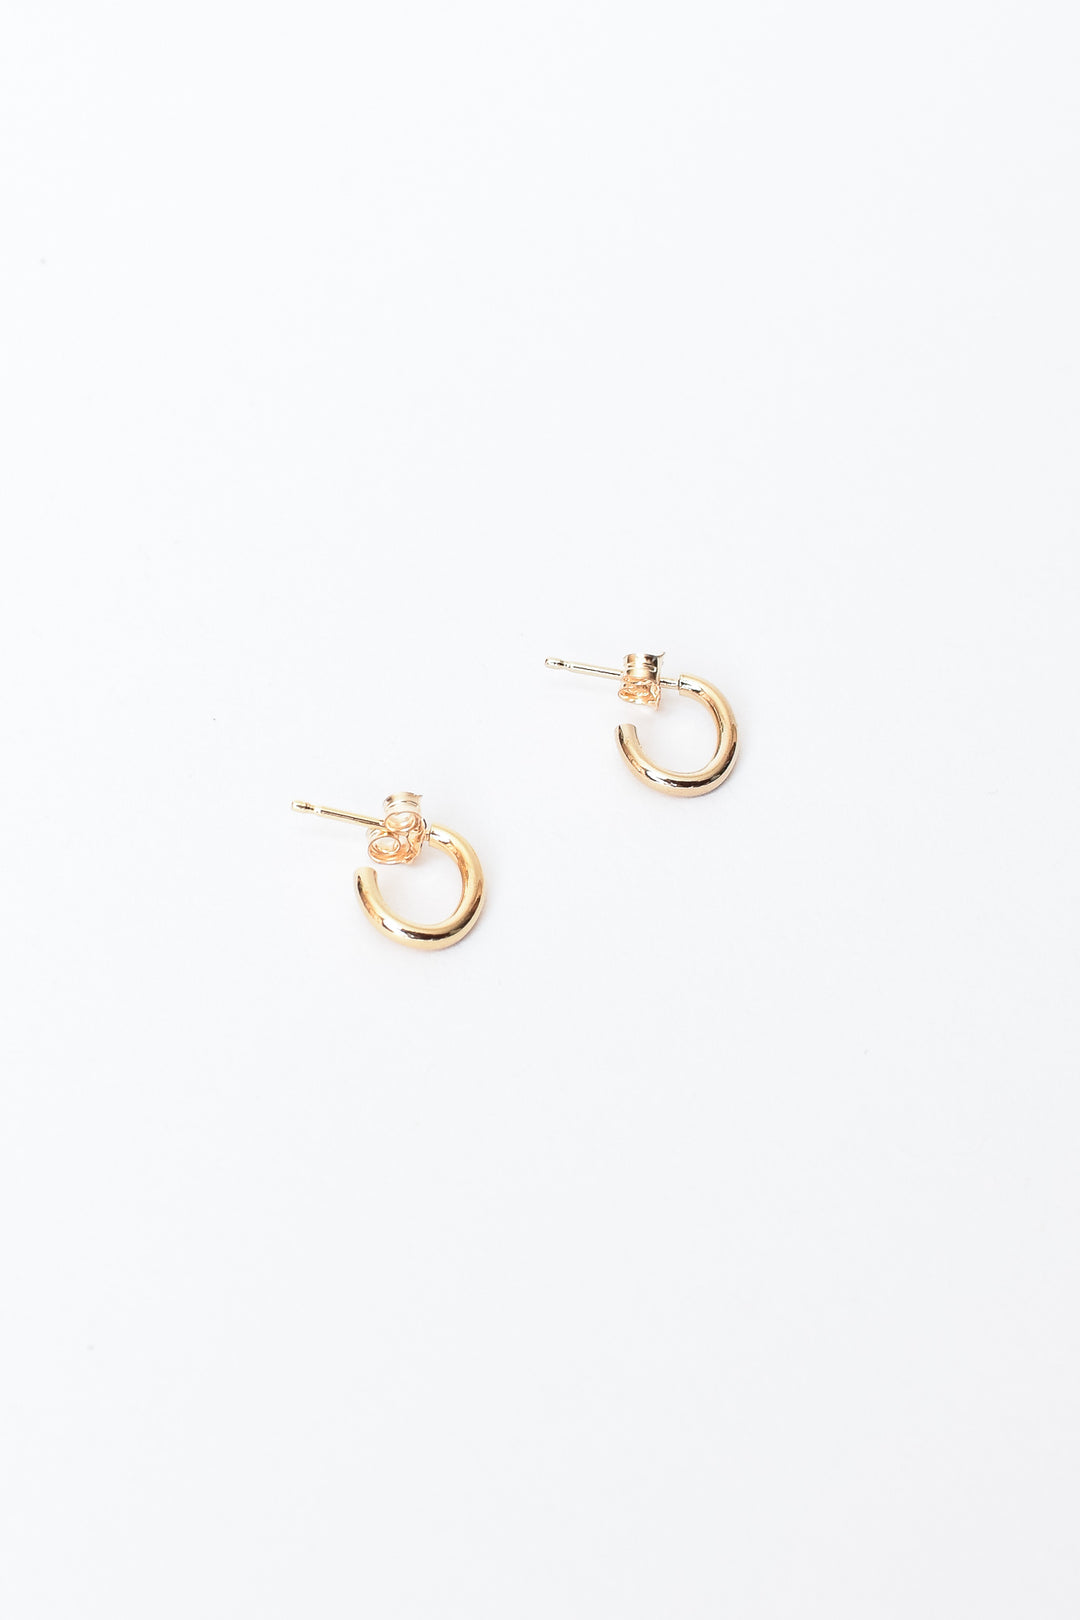 Oval Hugger Earrings - Gold, Baleen, - Frances Jaye